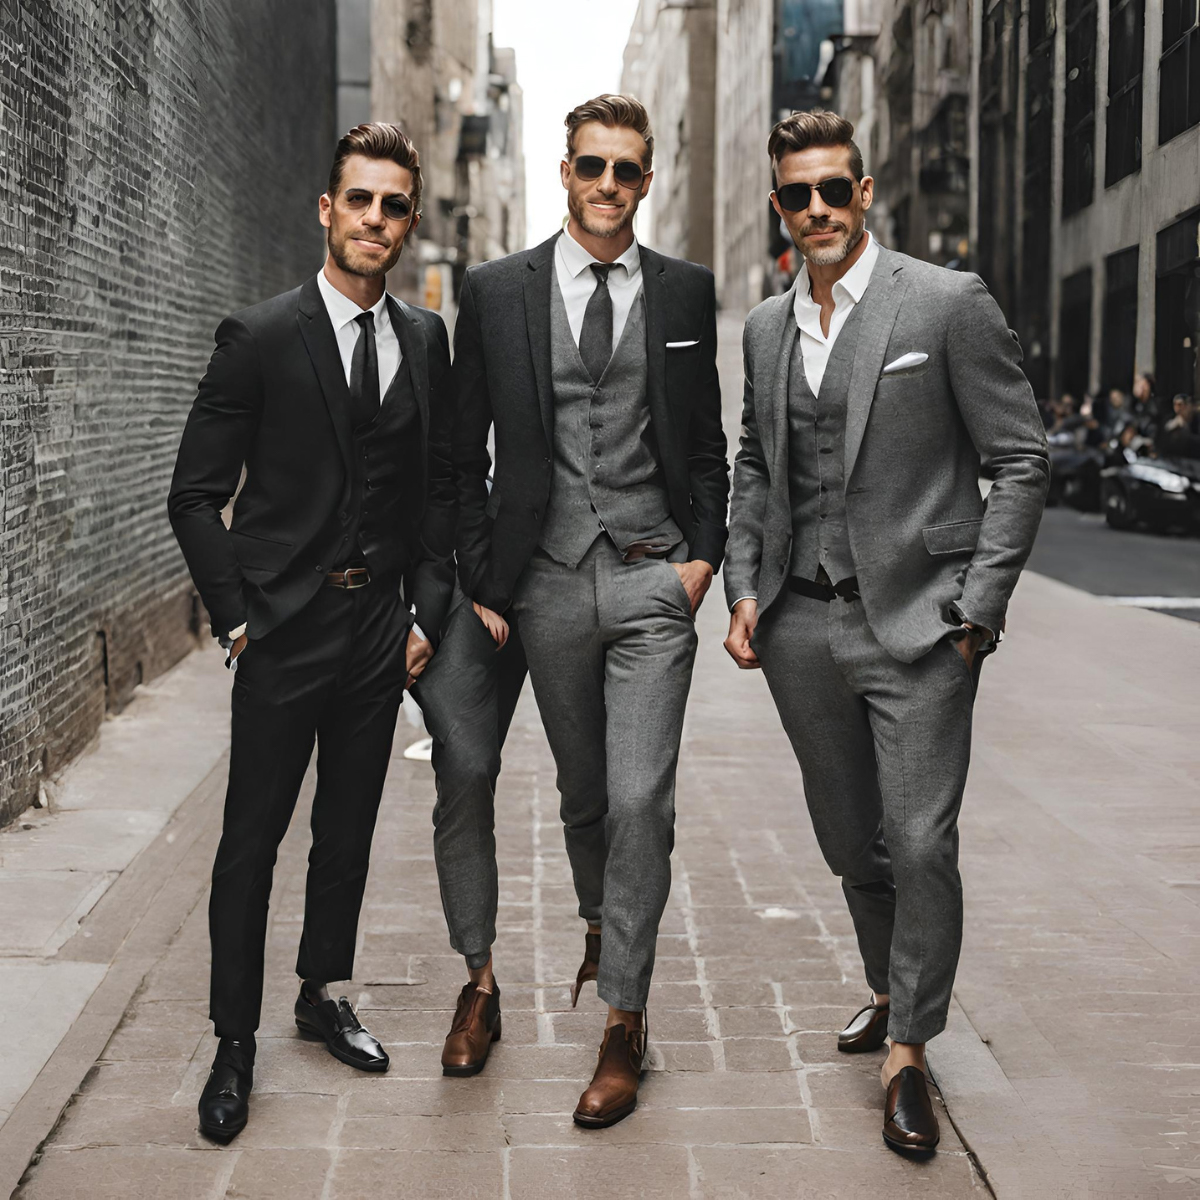 スーツを着てサングラスをかけた三人の男性が立っている